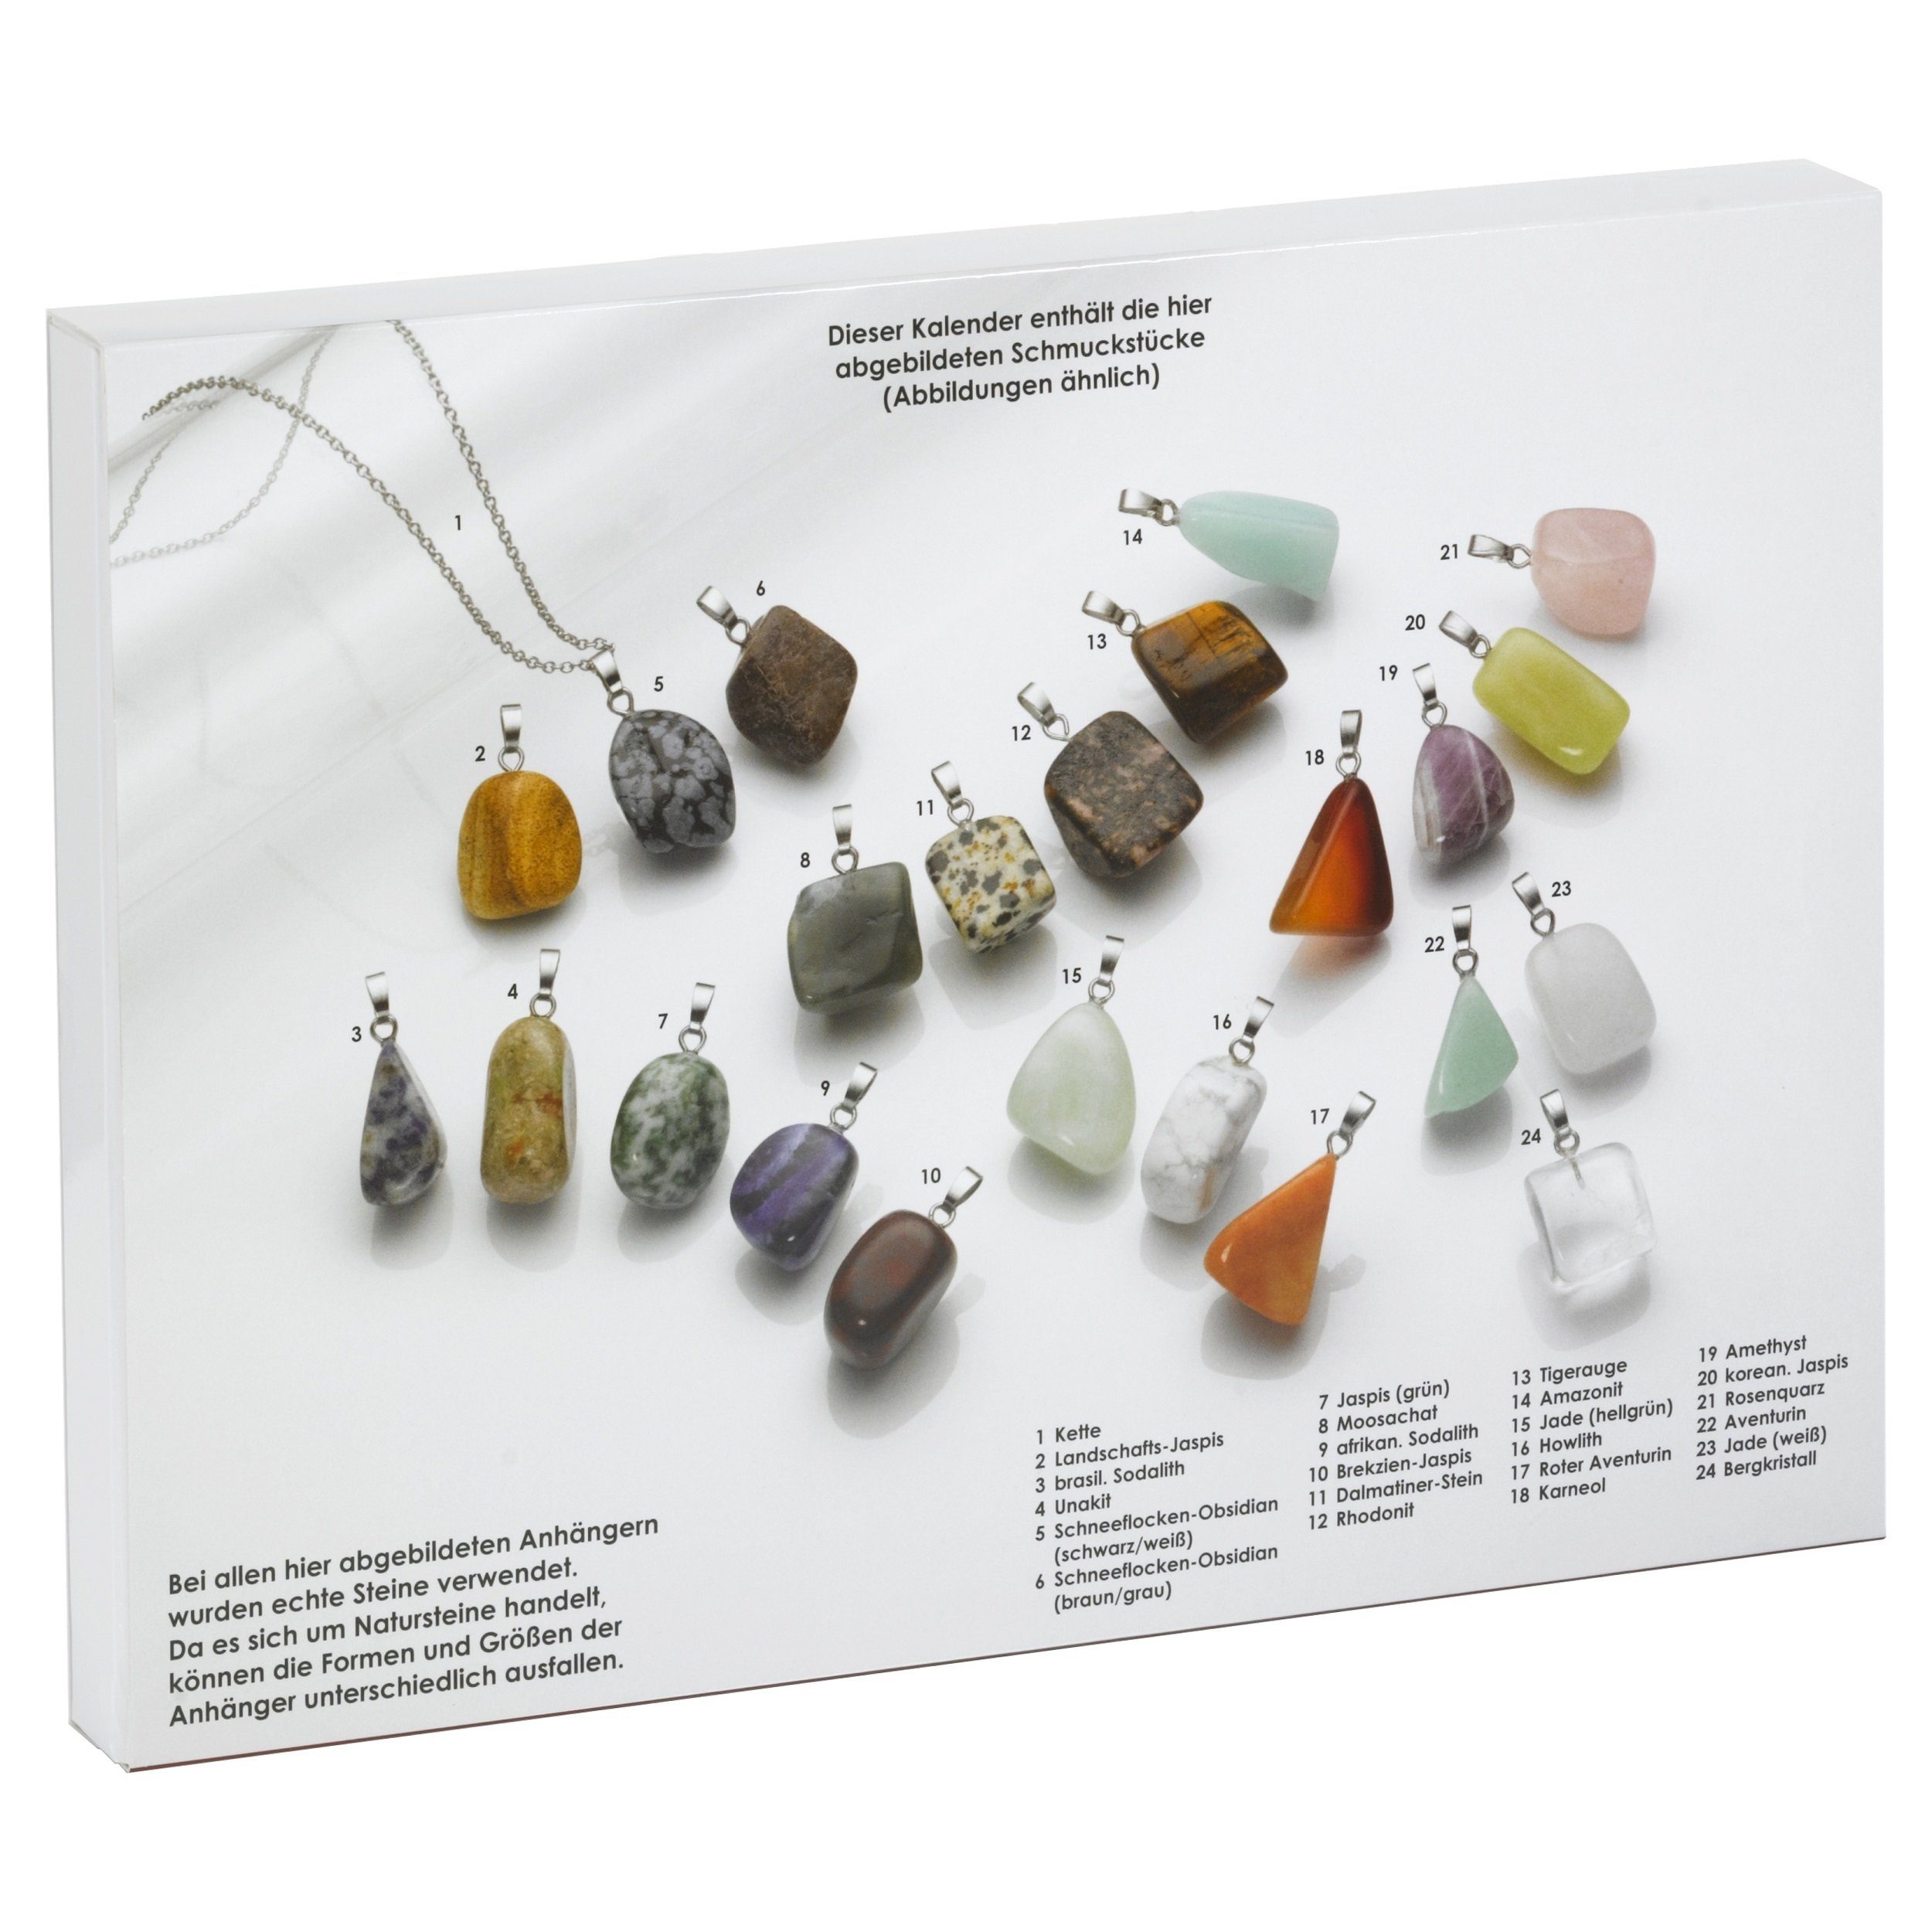 Edelstein-Anhängern, Schmuck-Adventskalender Metall mit Smart Jewel